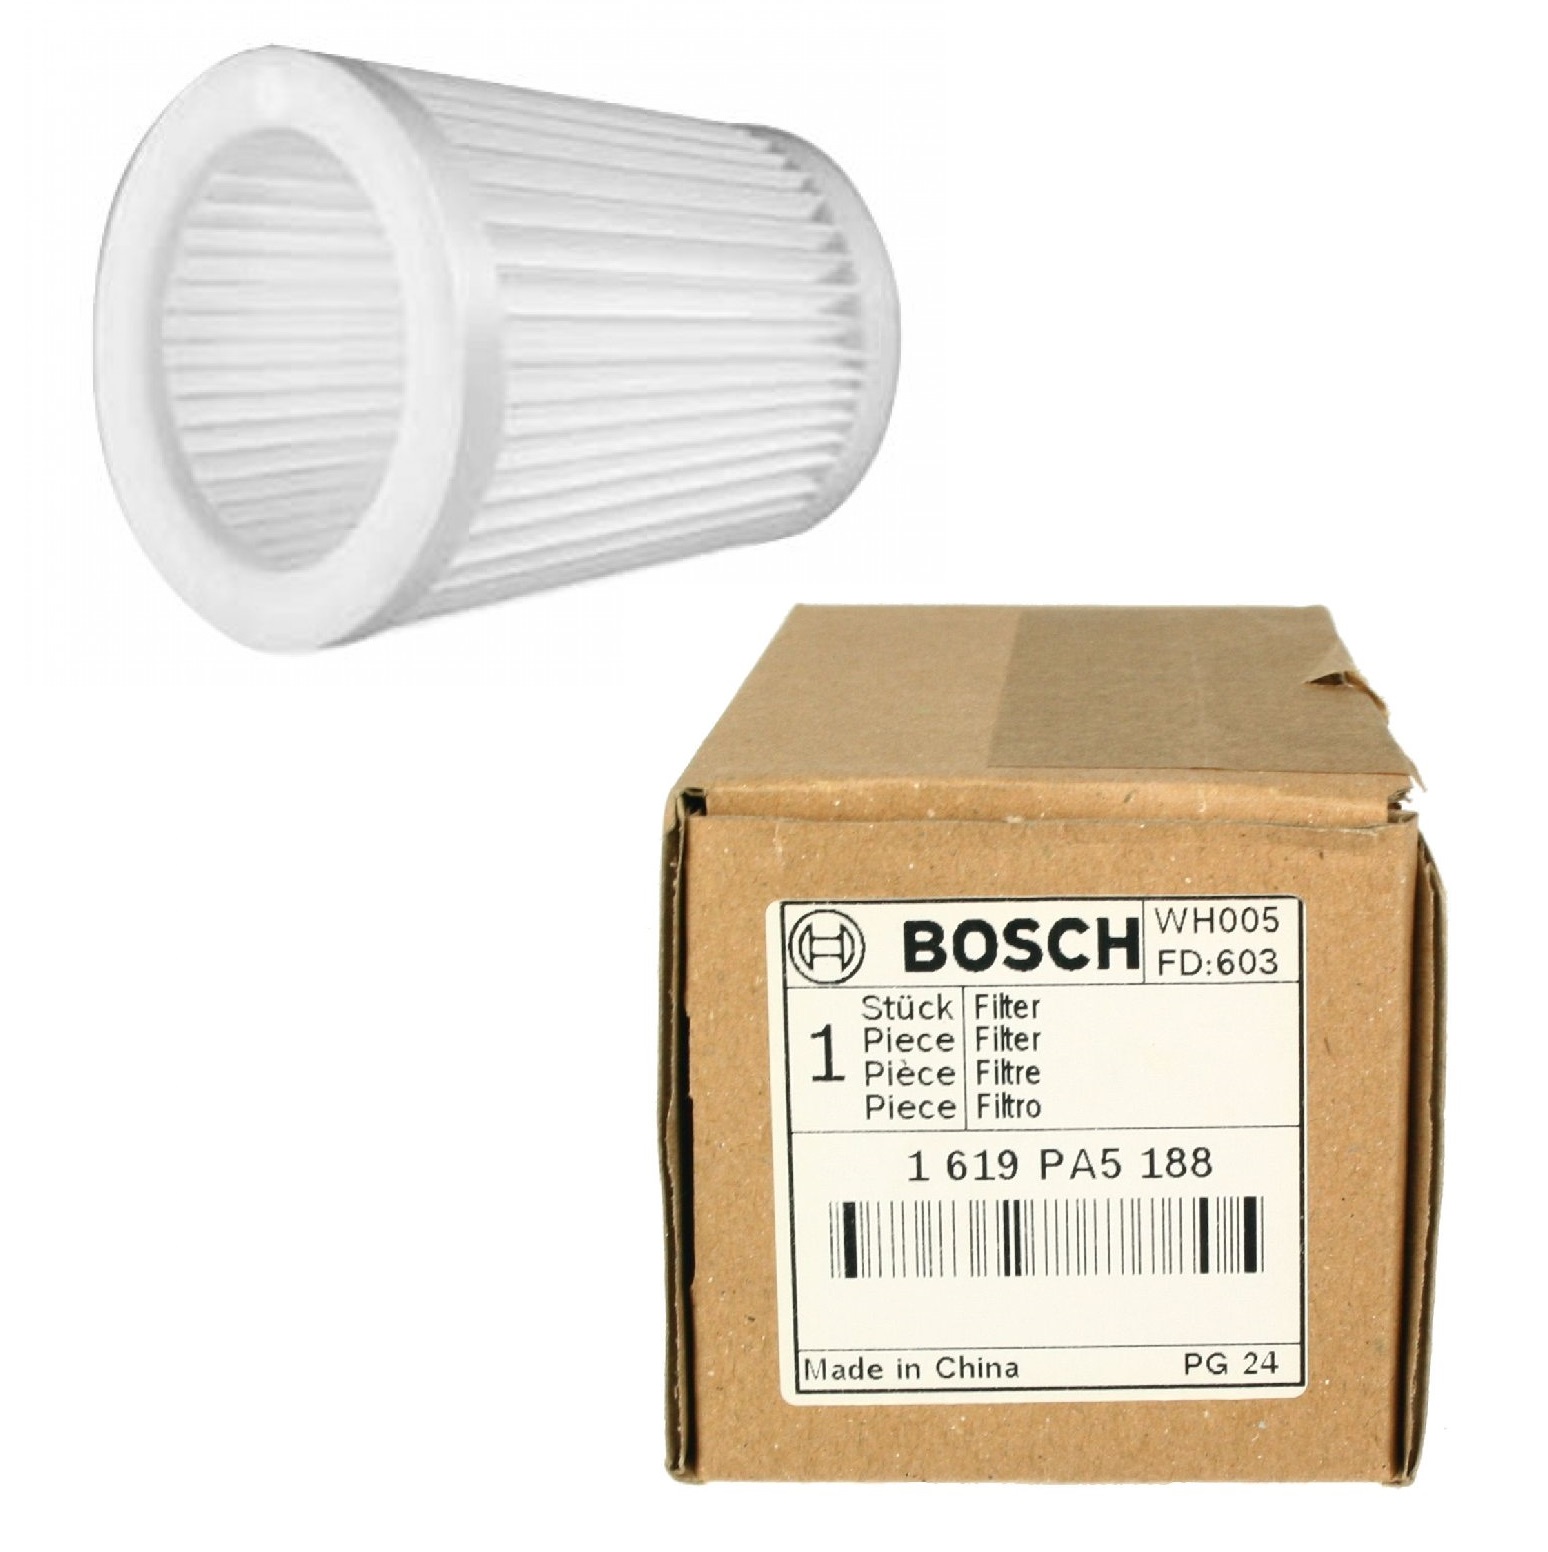 картинка Фильтр для аккумуляторного пылесоса Bosch PAS 18LI 1619PA5188 (1 619 PA5 188) от интернет-магазина РемЗапчасти24